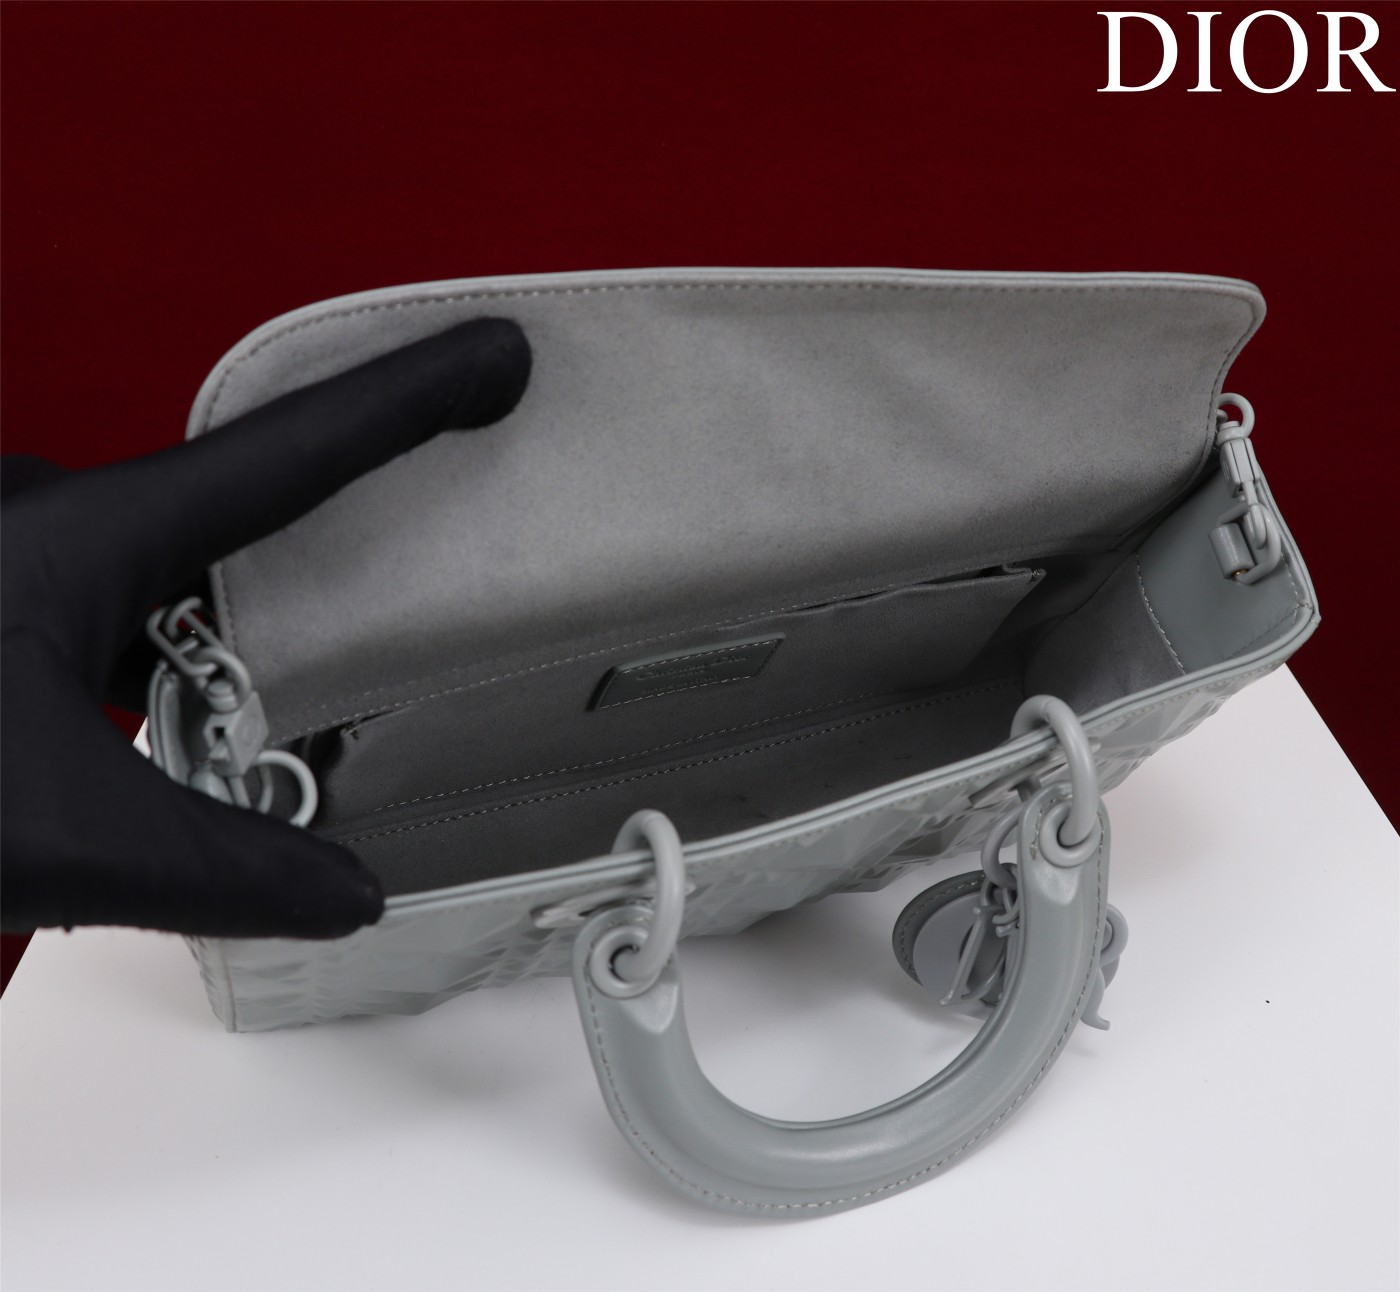 迪奥Dior顶级进口原厂牛皮钻石纹横款戴妃包出货M0540压花灰色Size:26*13.5*5cm